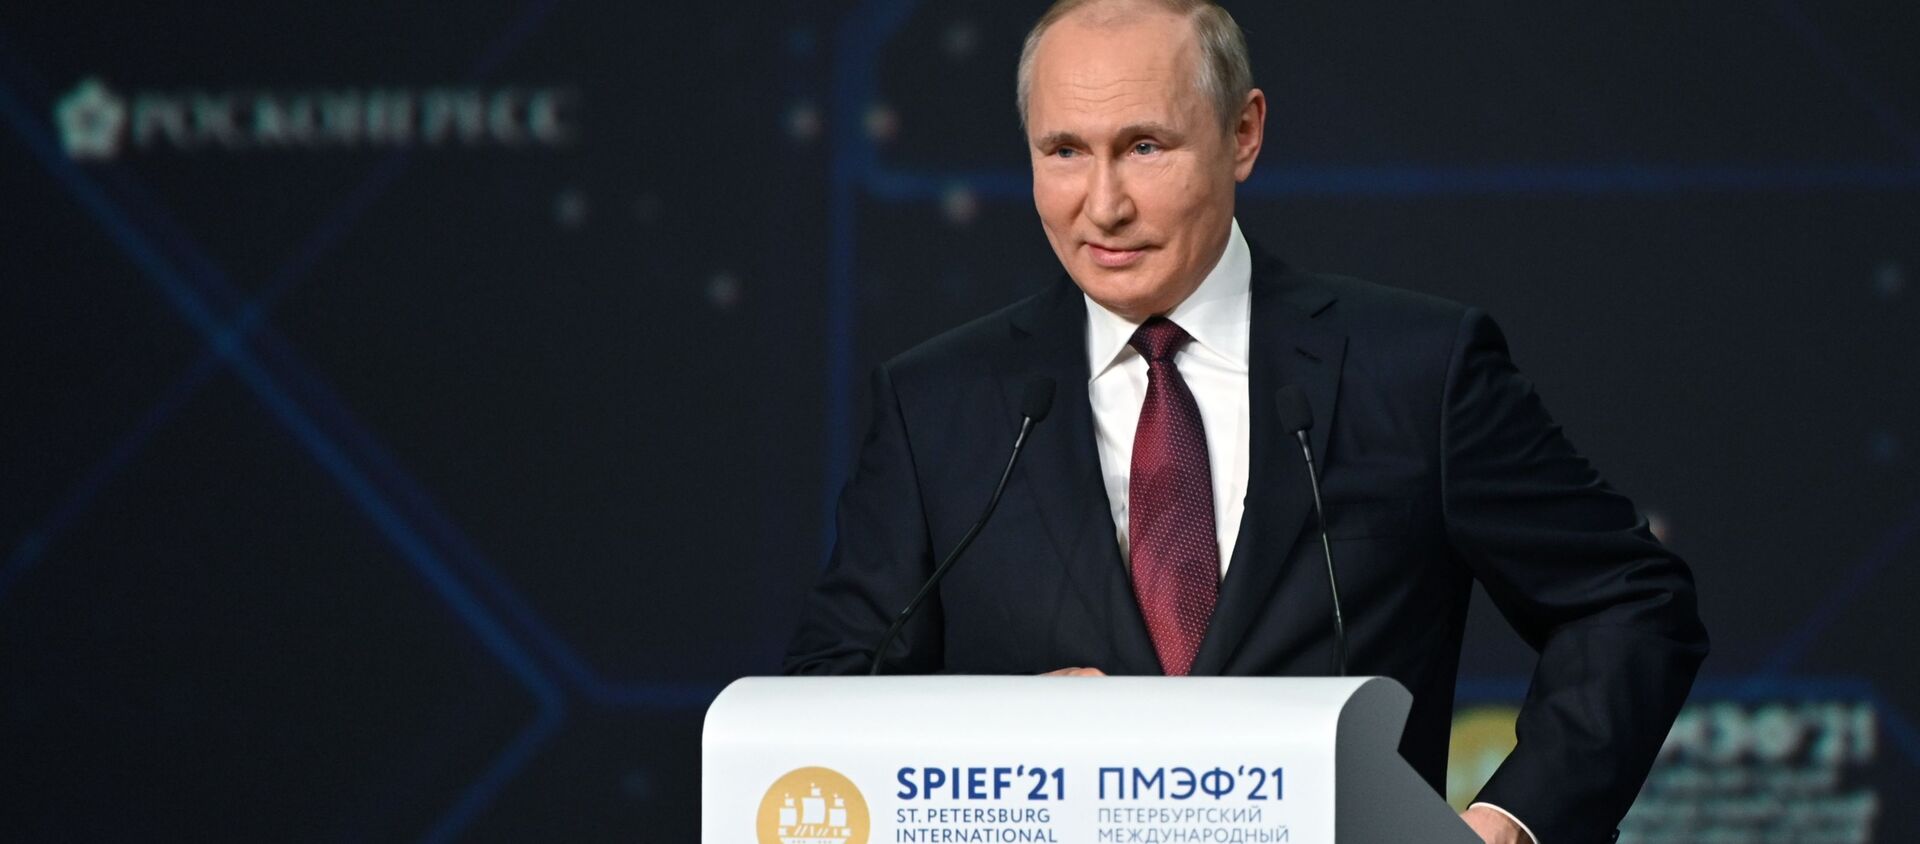 الرئيس الروسي فلاديمير بوتين في منتدى سان بطرسبورغ 2021، 4 يونيو 2021 - سبوتنيك عربي, 1920, 14.06.2021